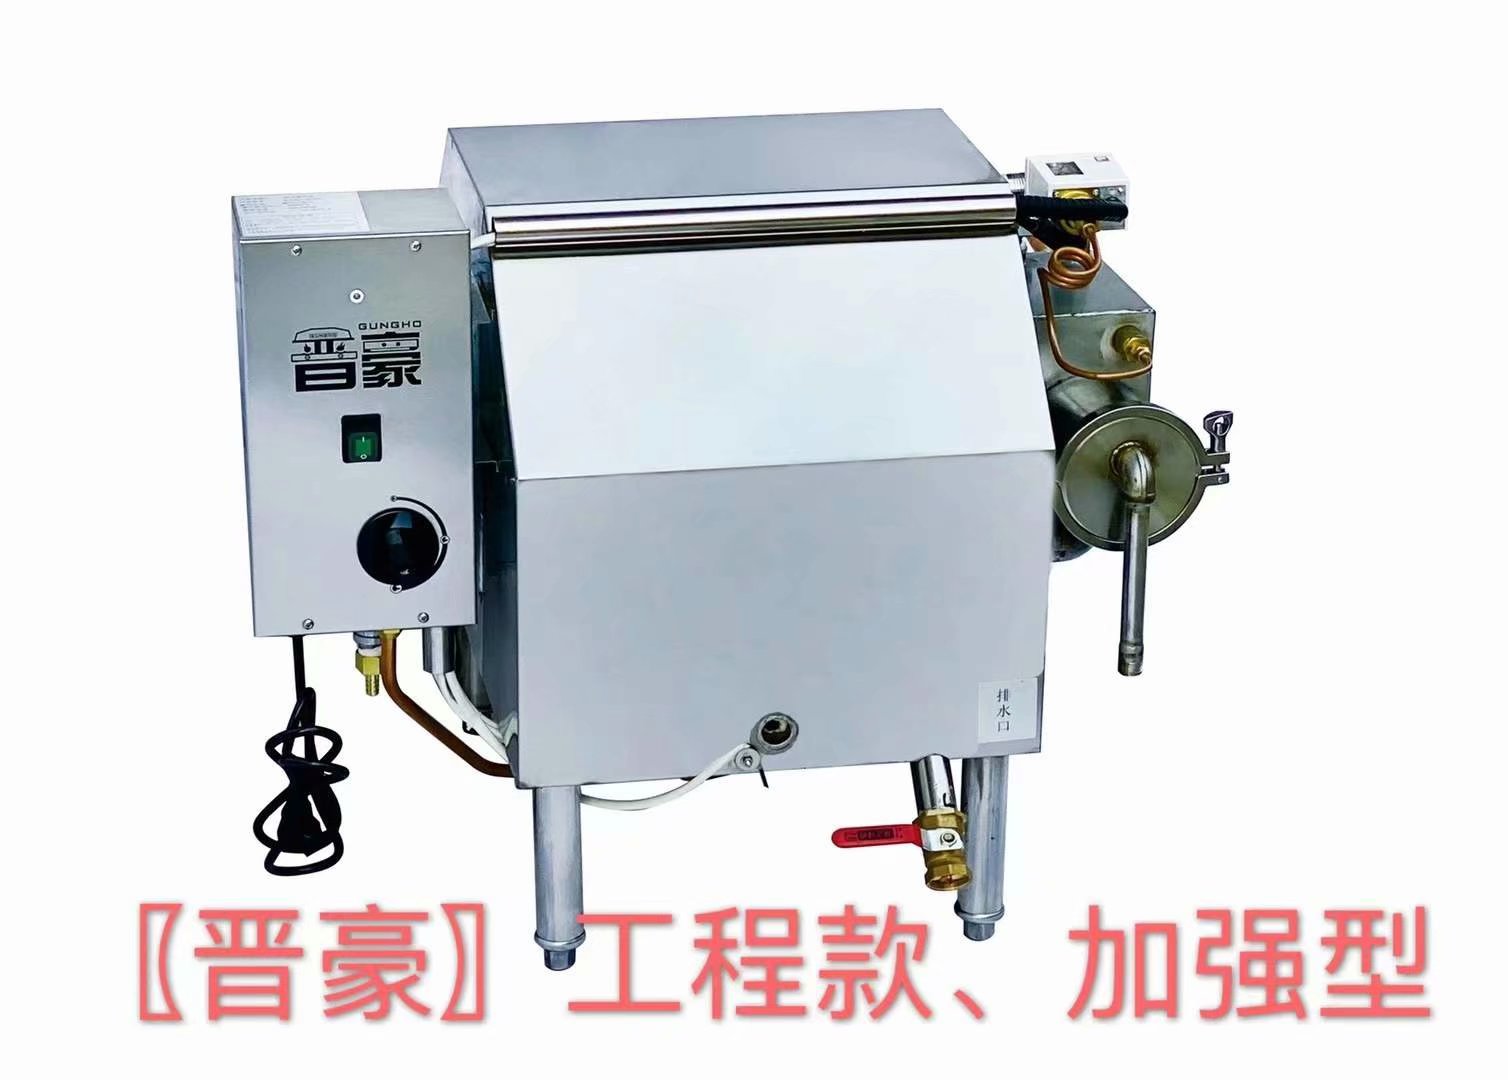 广州晋豪工程款卧式蒸汽发生器 30火排蒸汽量可达80公斤